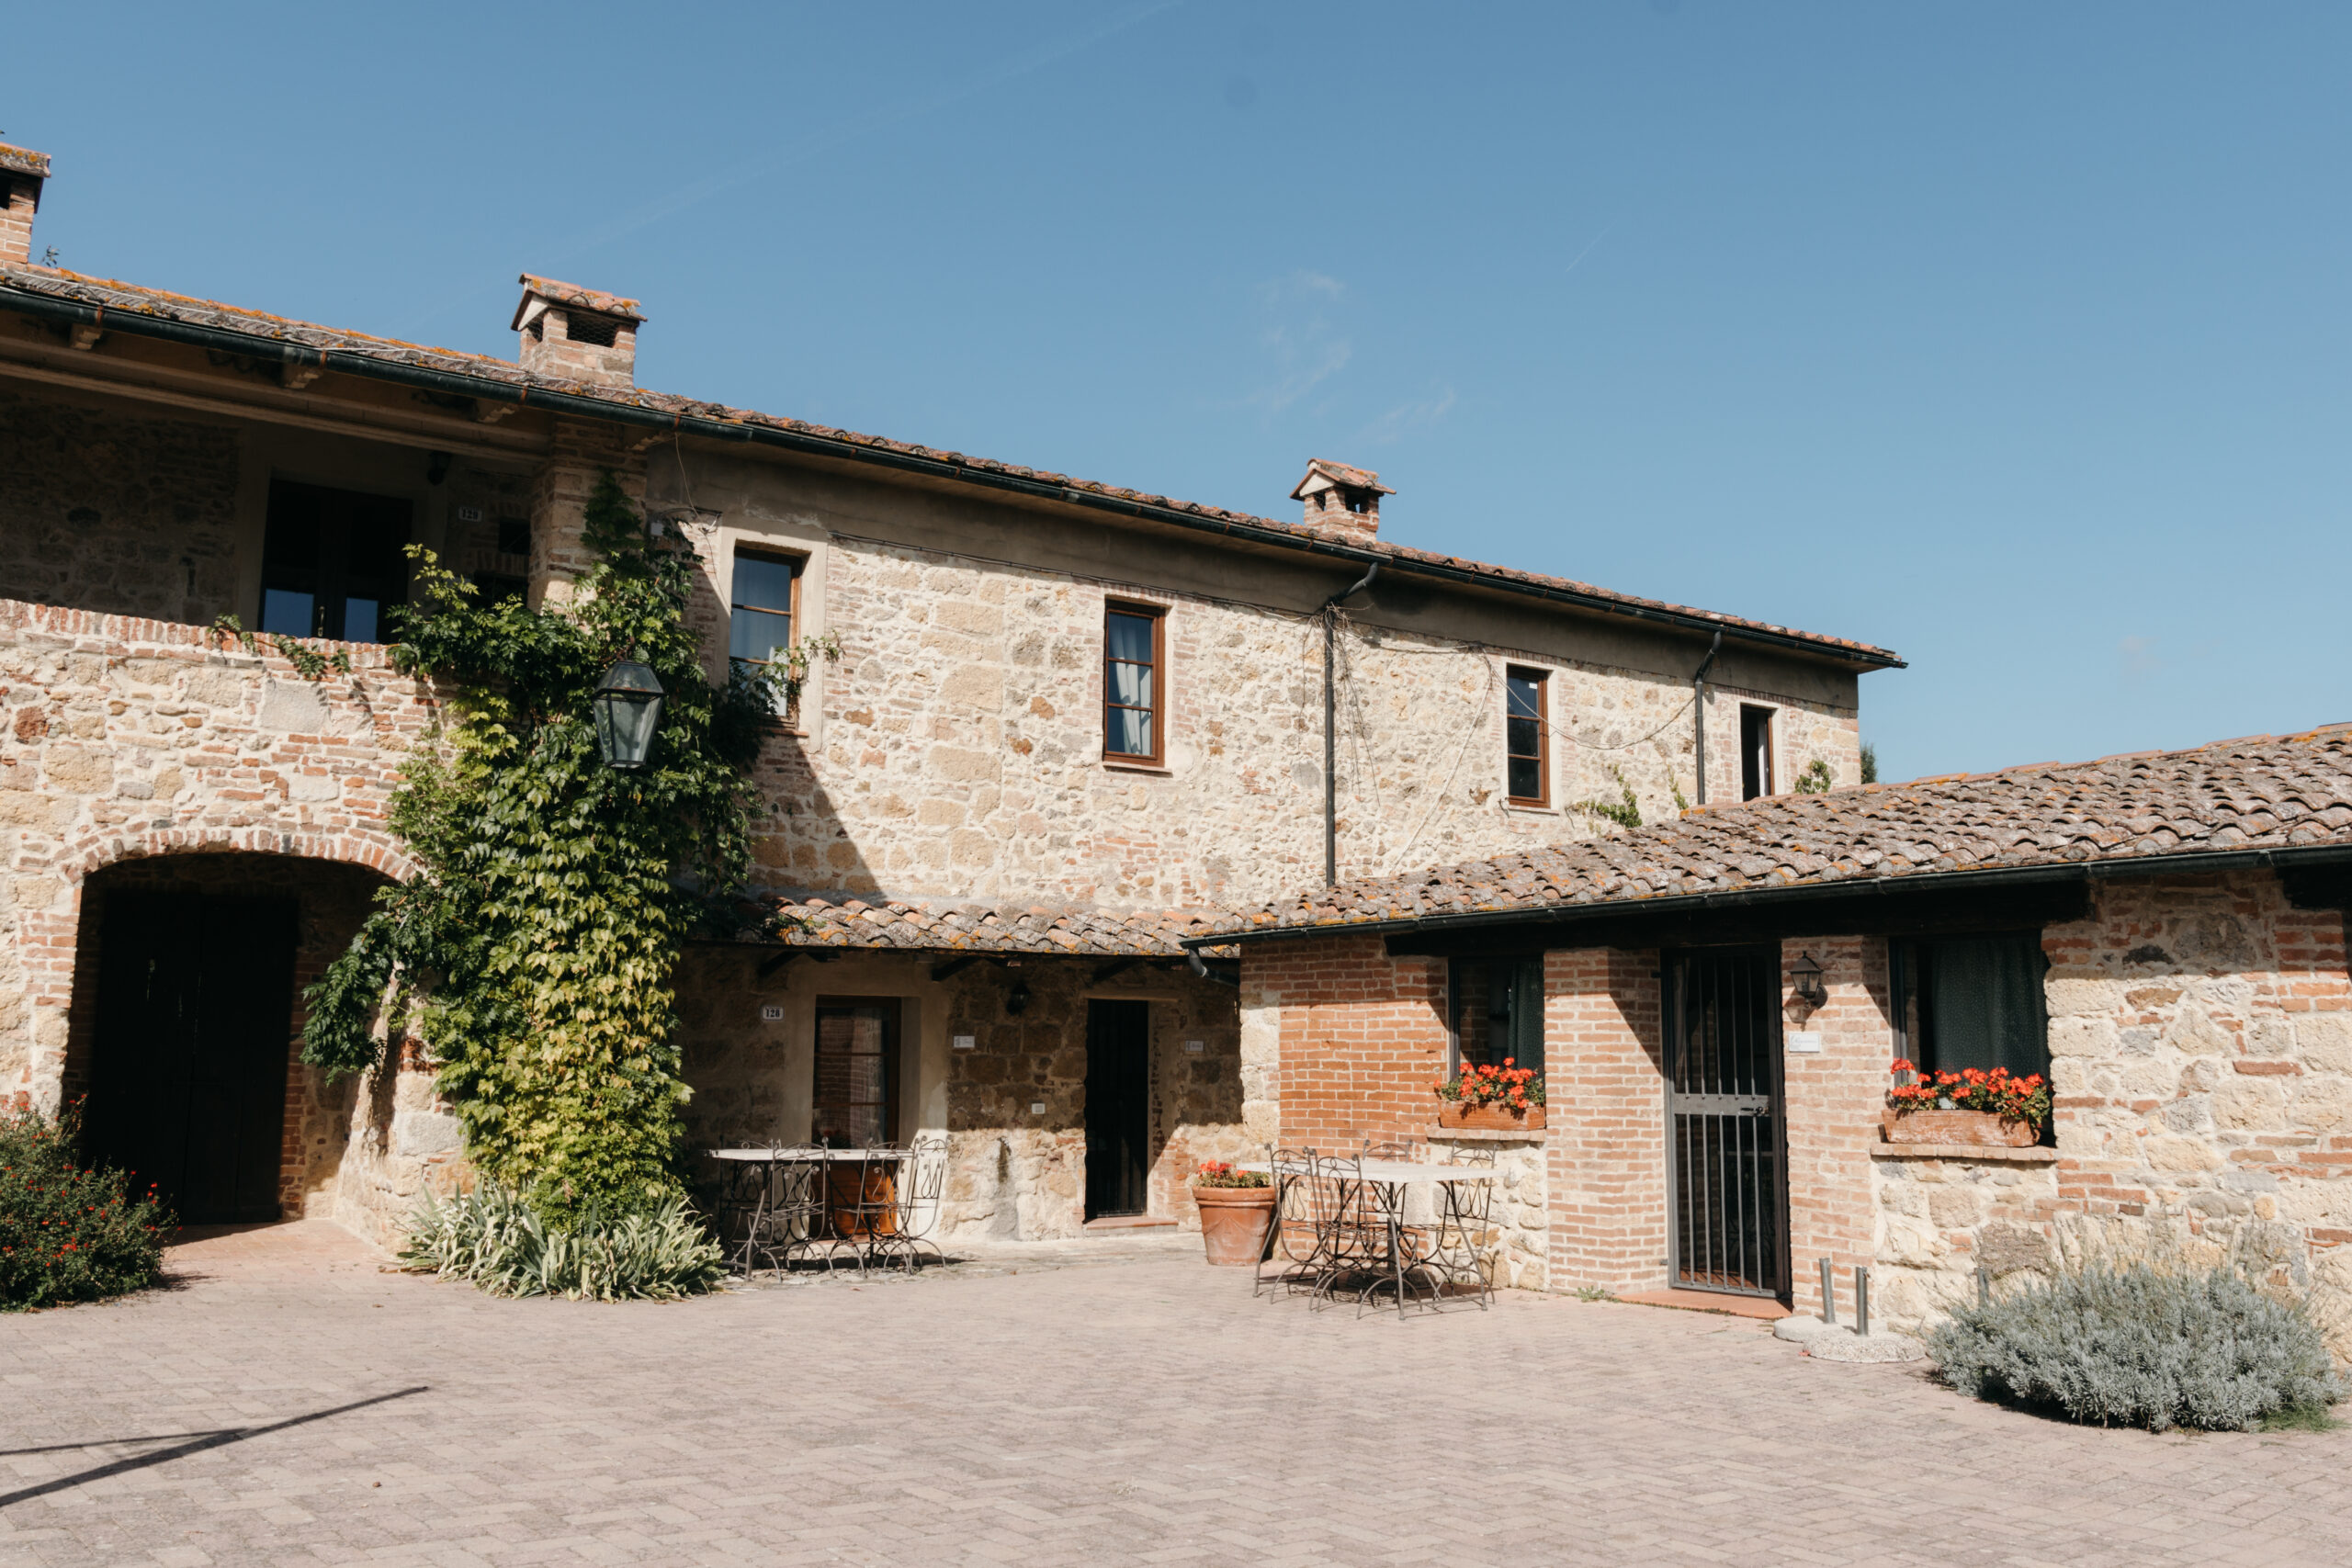 Heiraten in einer privaten Villa in der Toskana